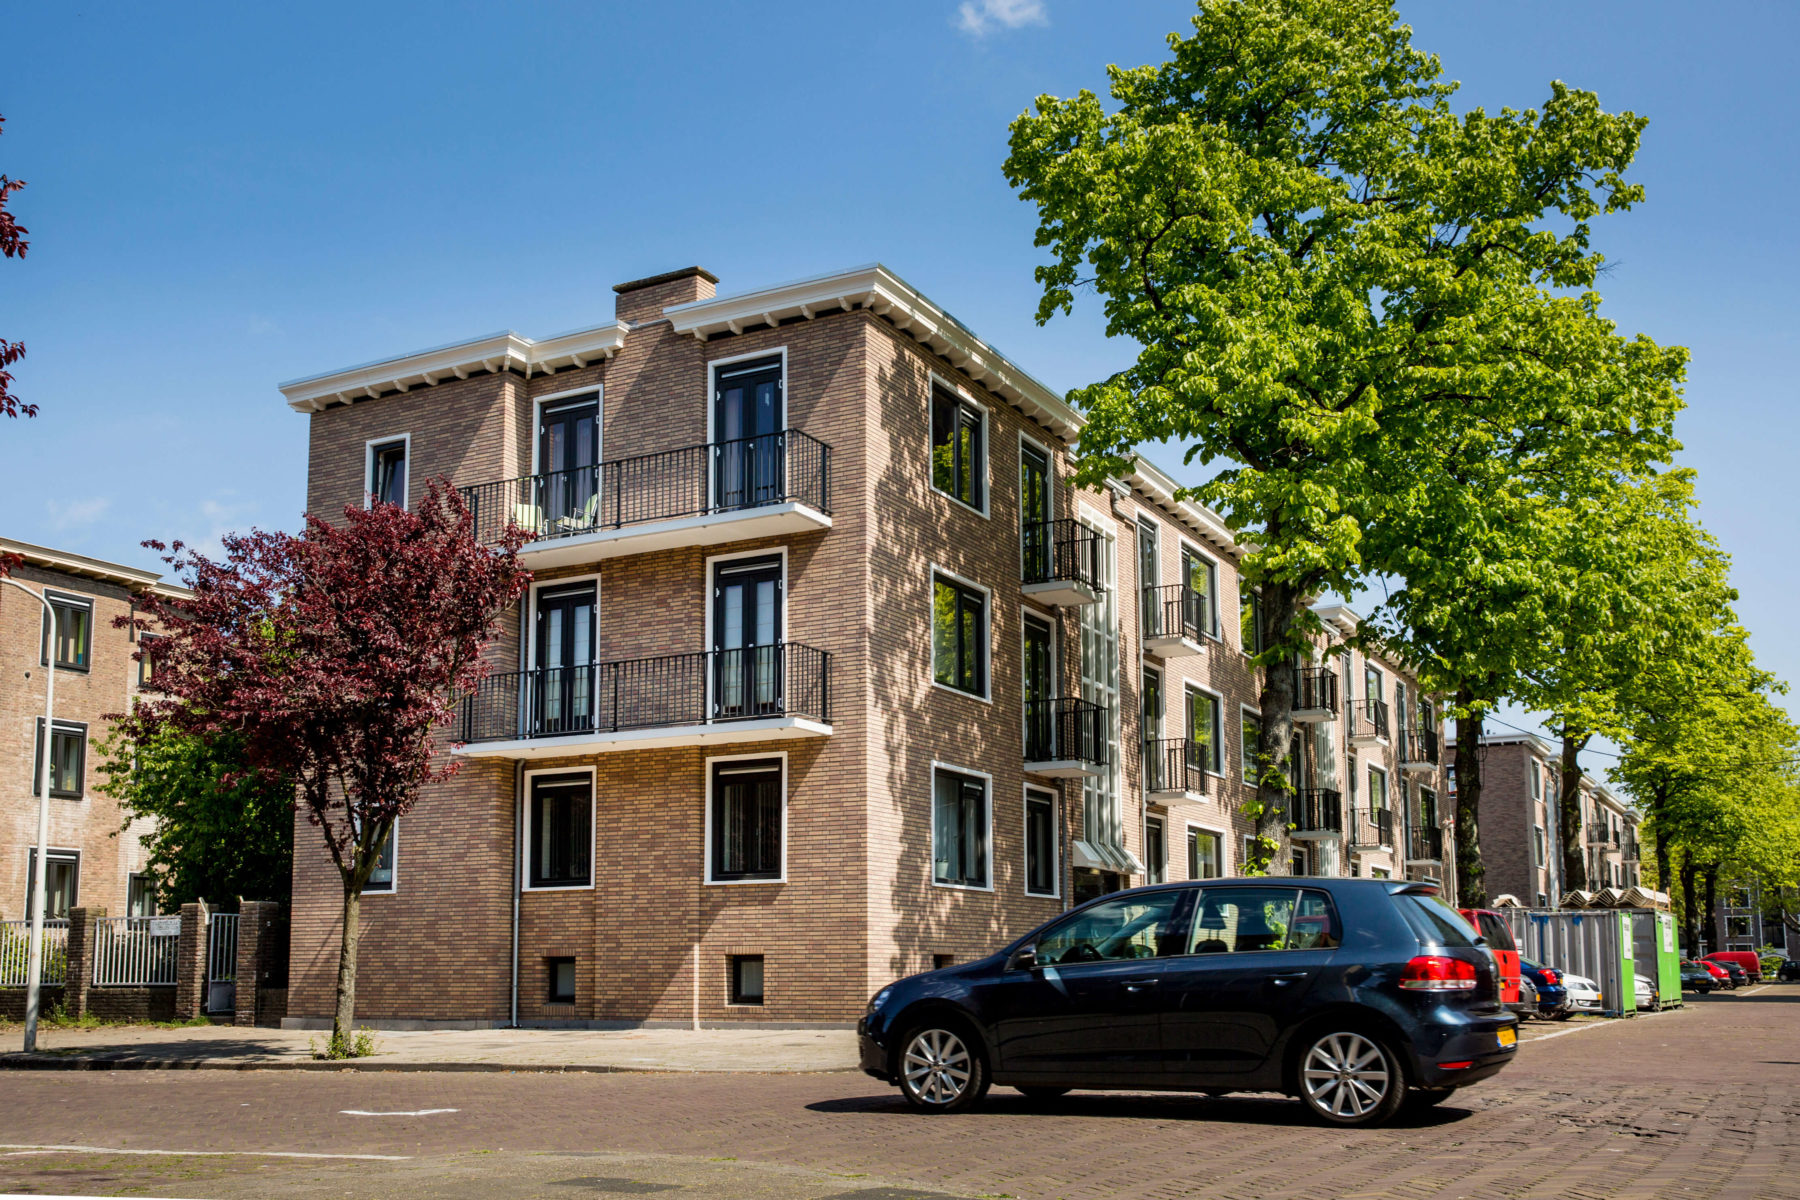 Woningcorporatie Haag Wonen besluit in 2015 een van haar wooncomplexen in de wijk Moerwijk in Den Haag grondig te verbeteren.  In november 2016 startte het groot onderhoud.